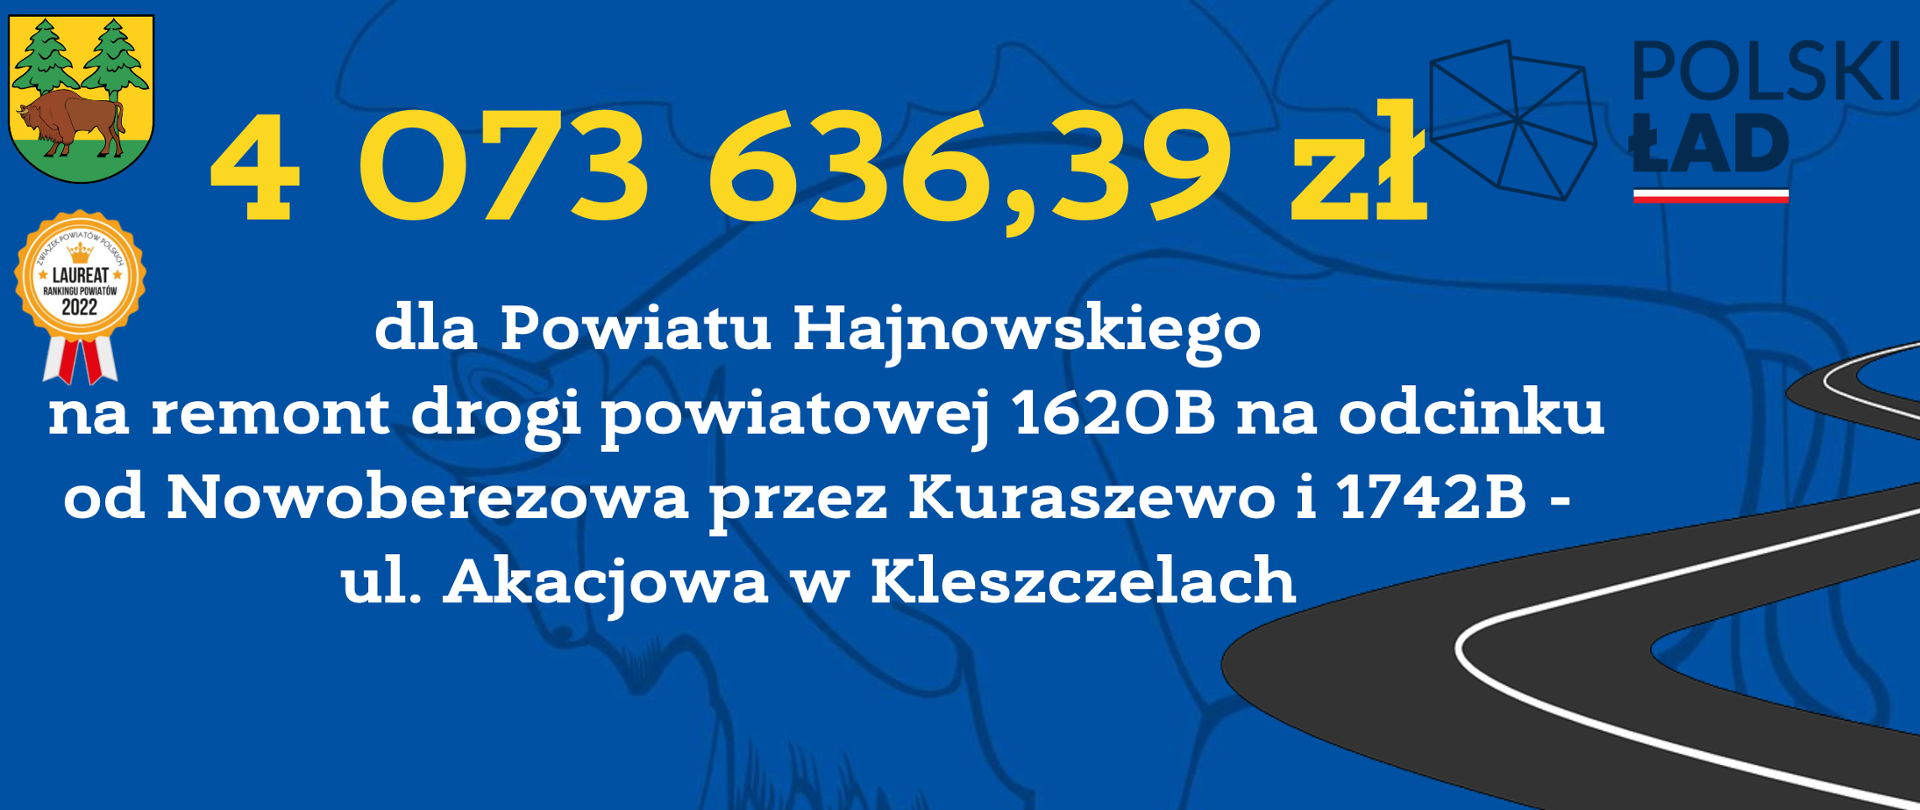 4 073 636,39 zł
dla Powiatu Hajnowskiego
na remont drogi powiatowej 1620B na odcinku od Nowoberezowa przez Kuraszewo i 1742B - ul. Akacjowa w Kleszczelach